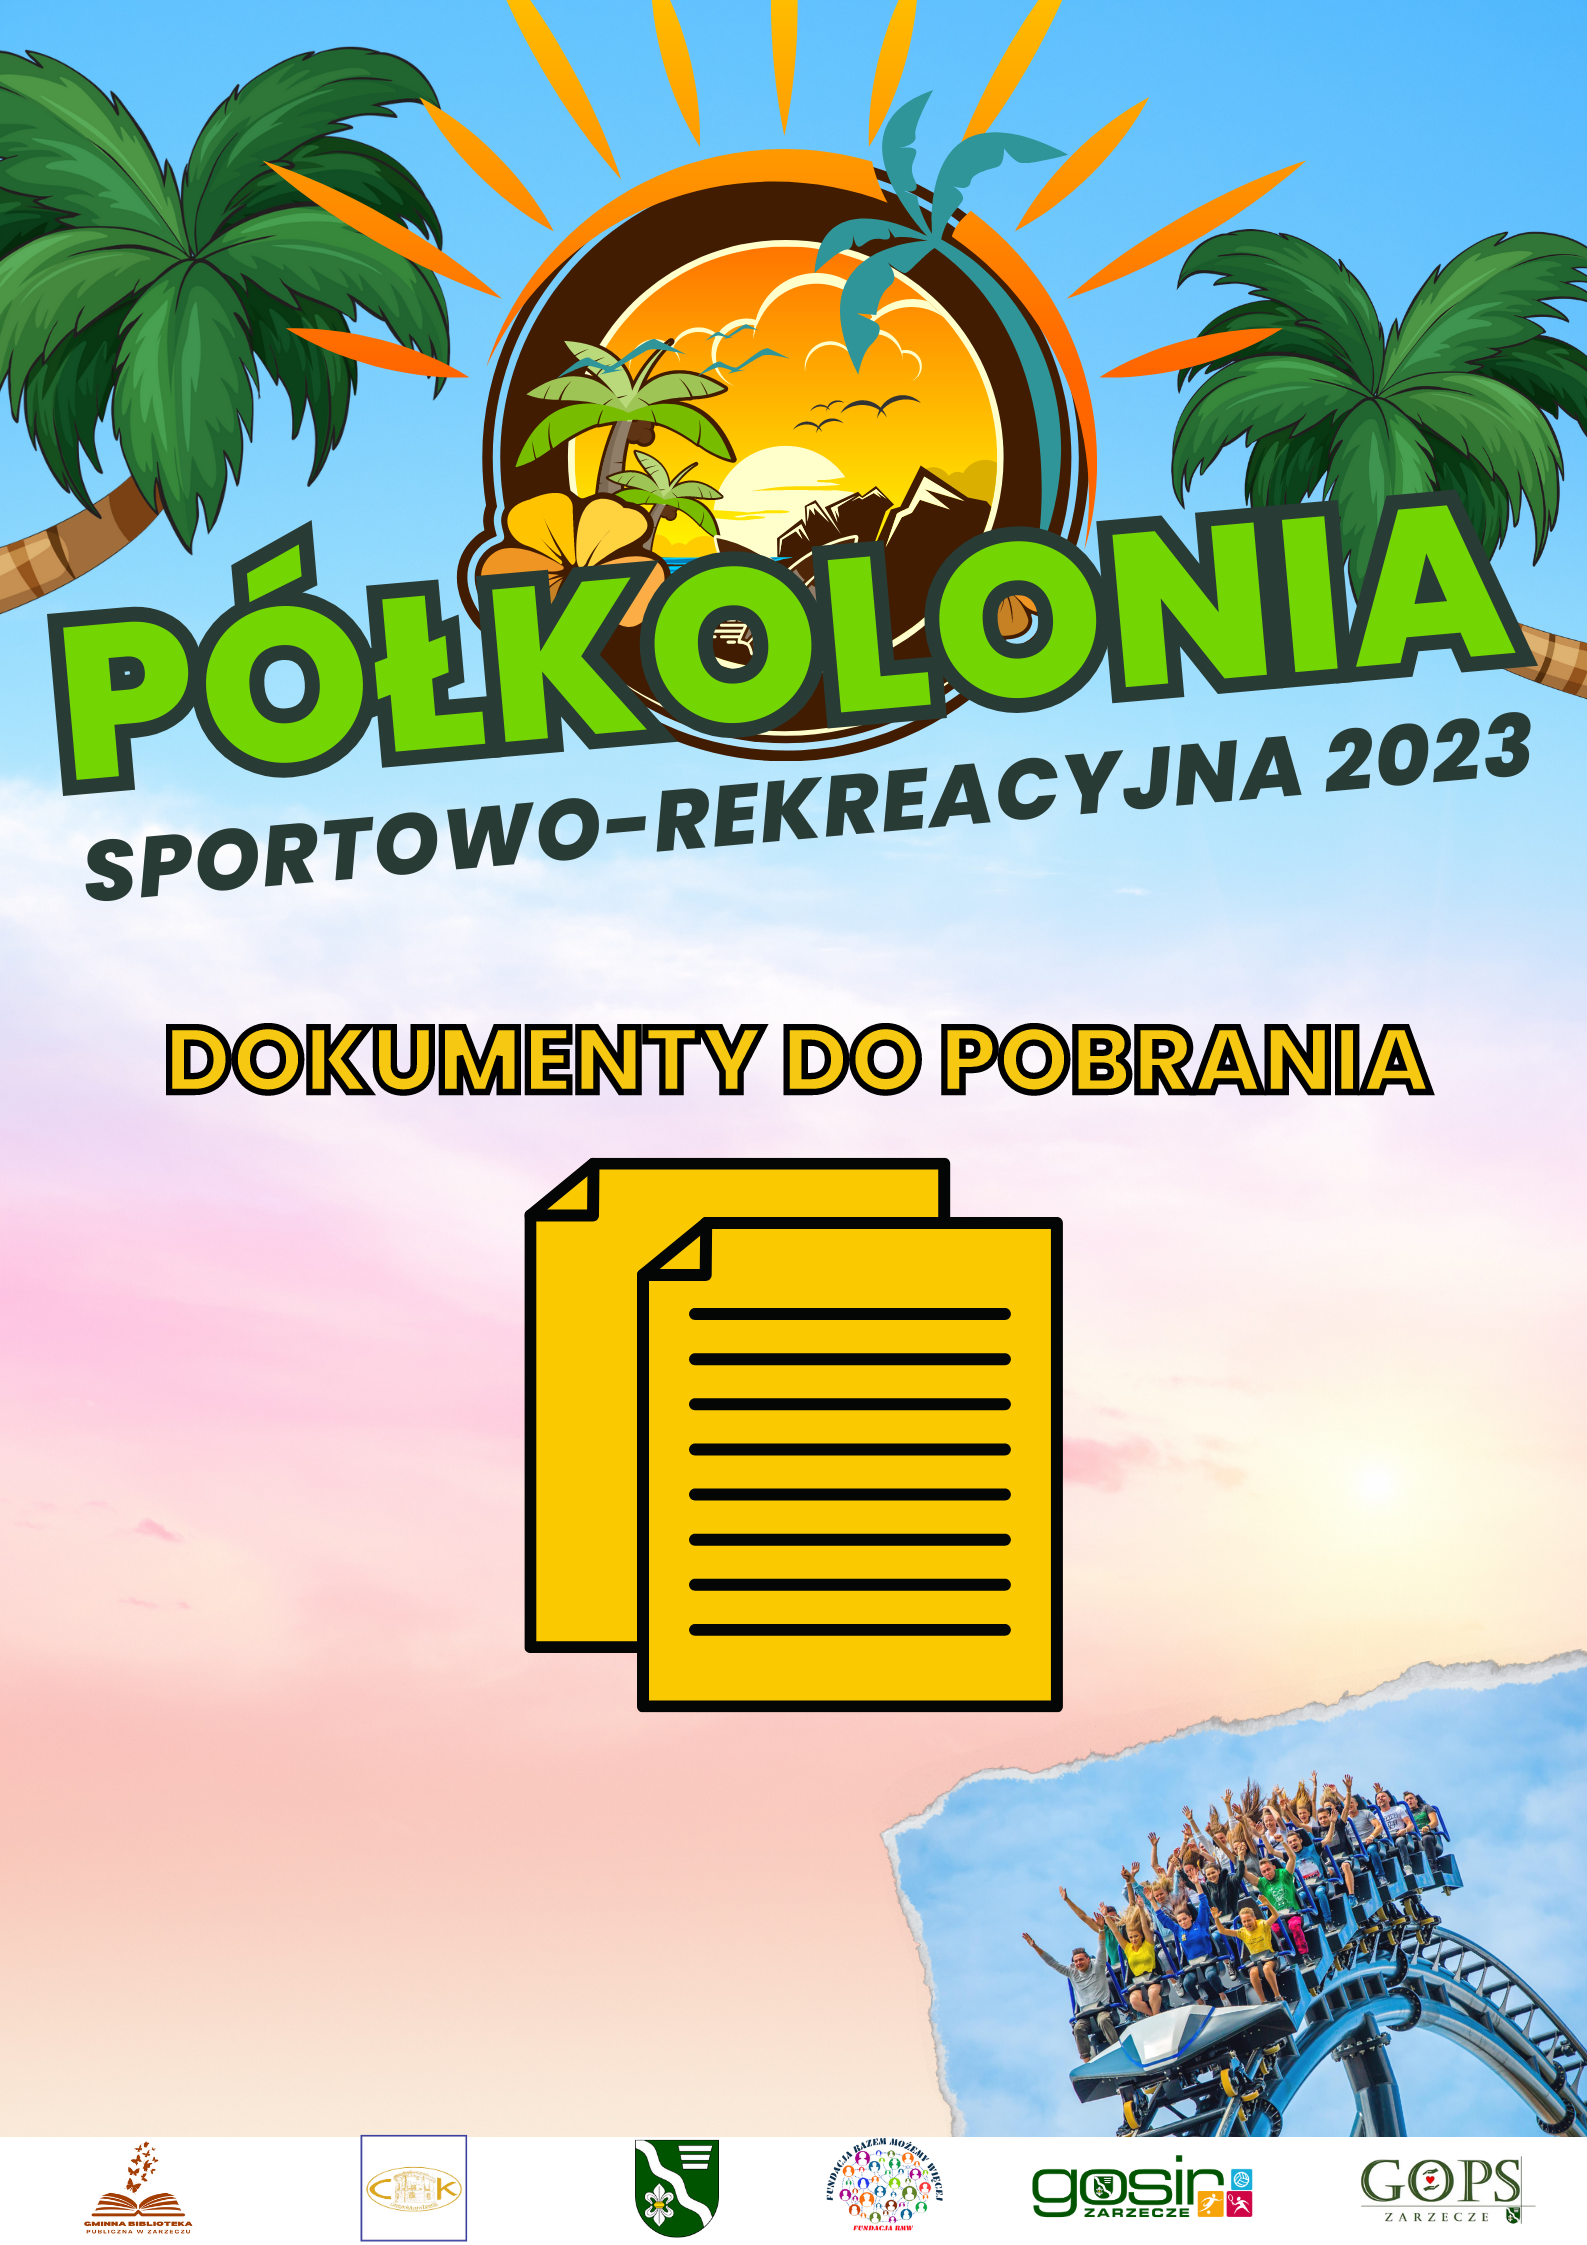 polkolonia-sportowo-rekreacyjna-2023-dokumenty-do-pobrania